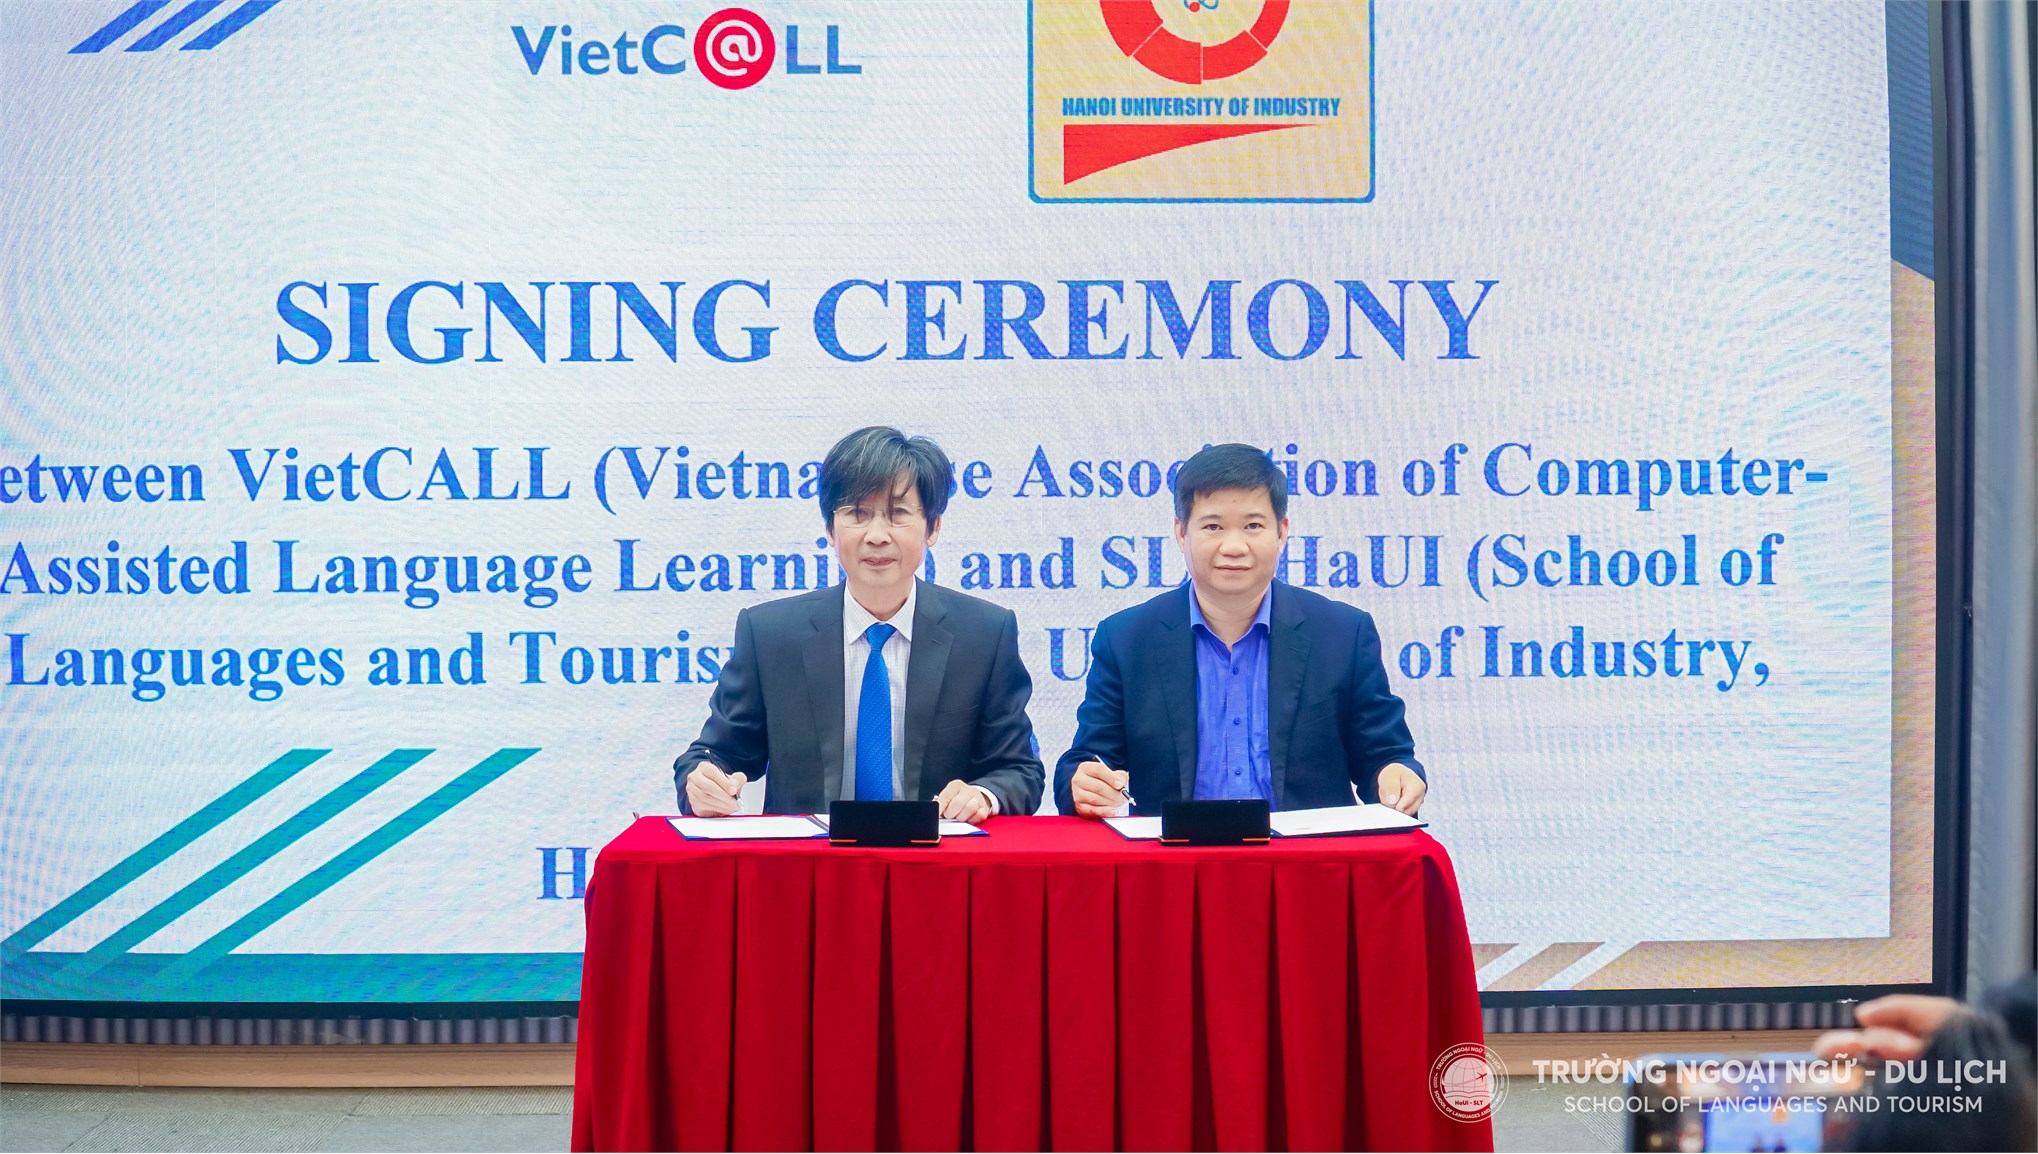 Đẩy mạnh hoạt động khoa học công nghệ, xuất bản và tổ chức hội nghị, hội thảo với Hiệp hội VietCALL